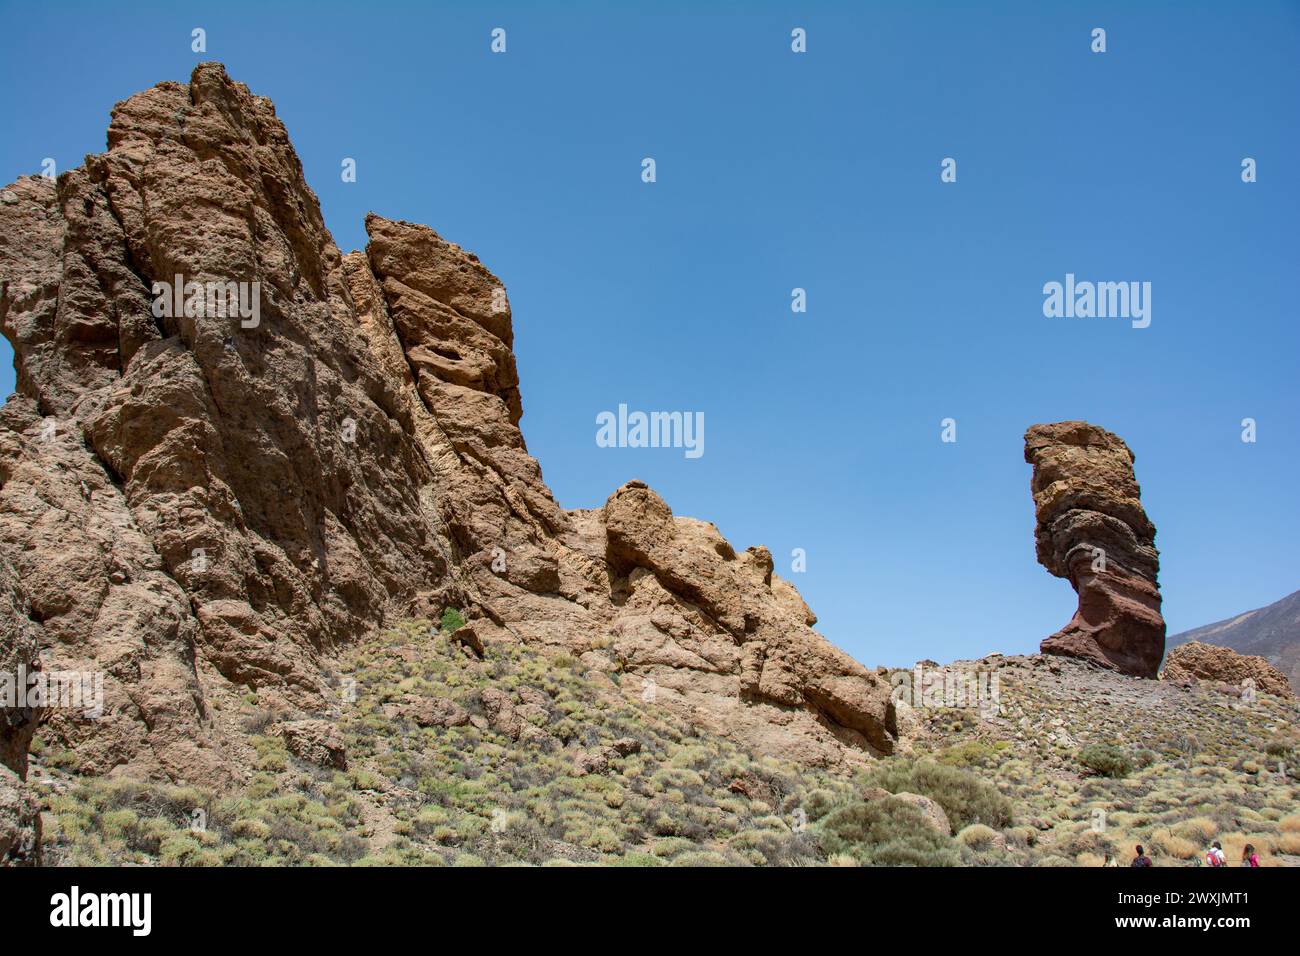 Der bizarr geformte Roque Cinchado-Felsen aus vulkanischem Gestein im Teide-Nationalpark auf der Kanarischen Insel Teneriffa, Spanien Stockfoto